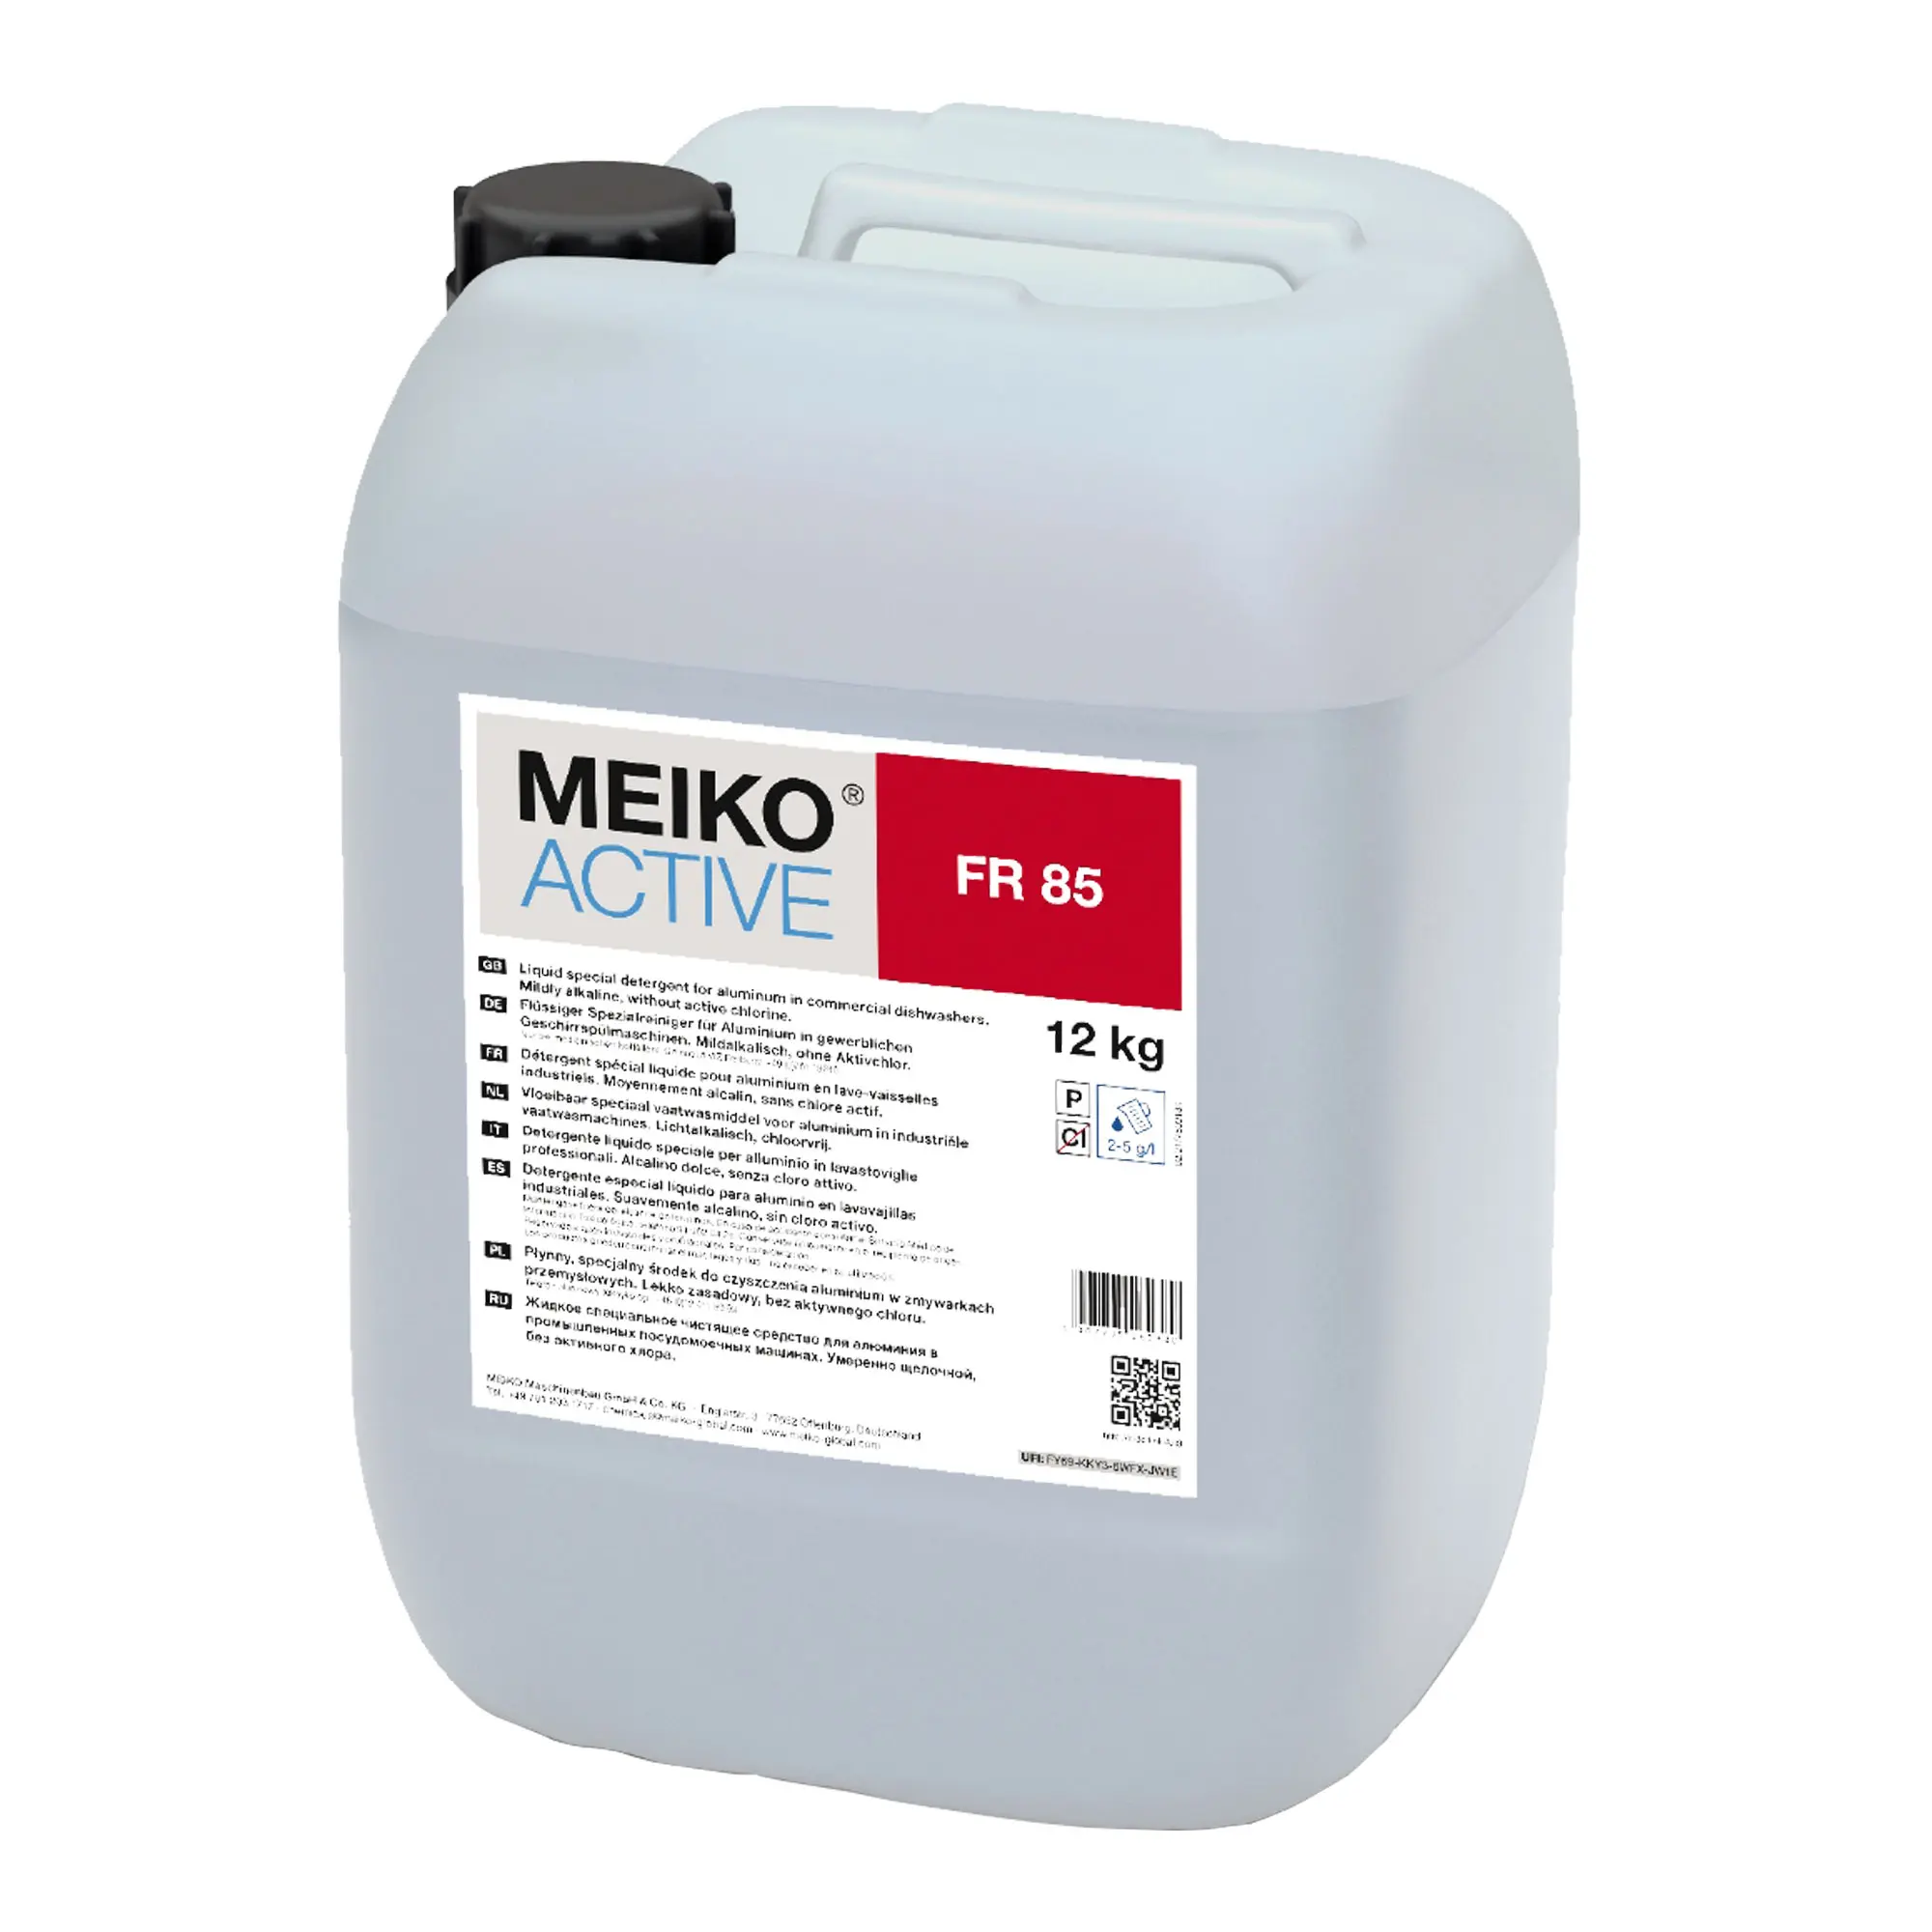 Meiko Active FR 85 flüssiger Spezialreiniger für Spülgut aus Aluminium